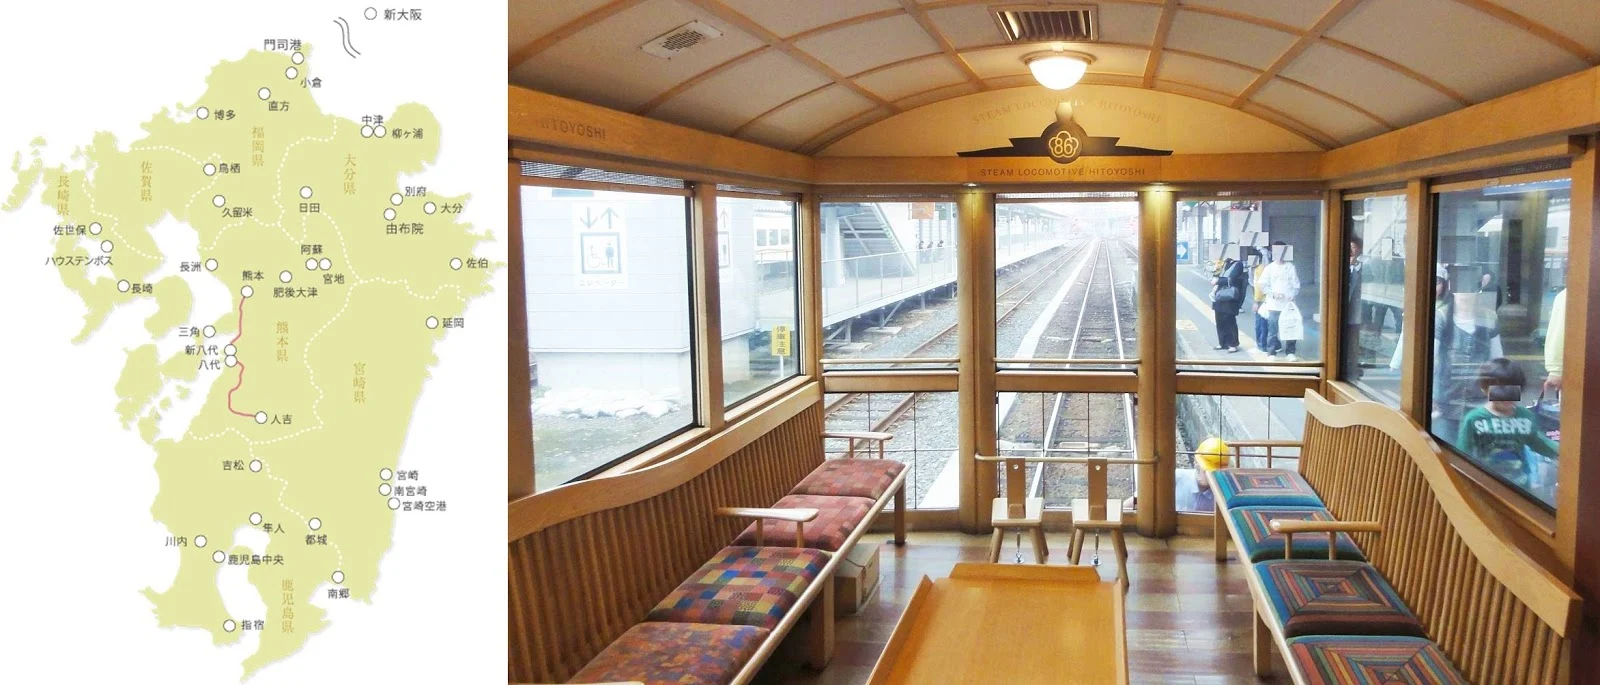 九州-特色觀光列車-推薦-D&S列車-SL人吉-攻略-特色列車預訂-觀光列車-火車-JR-交通-Kyushu